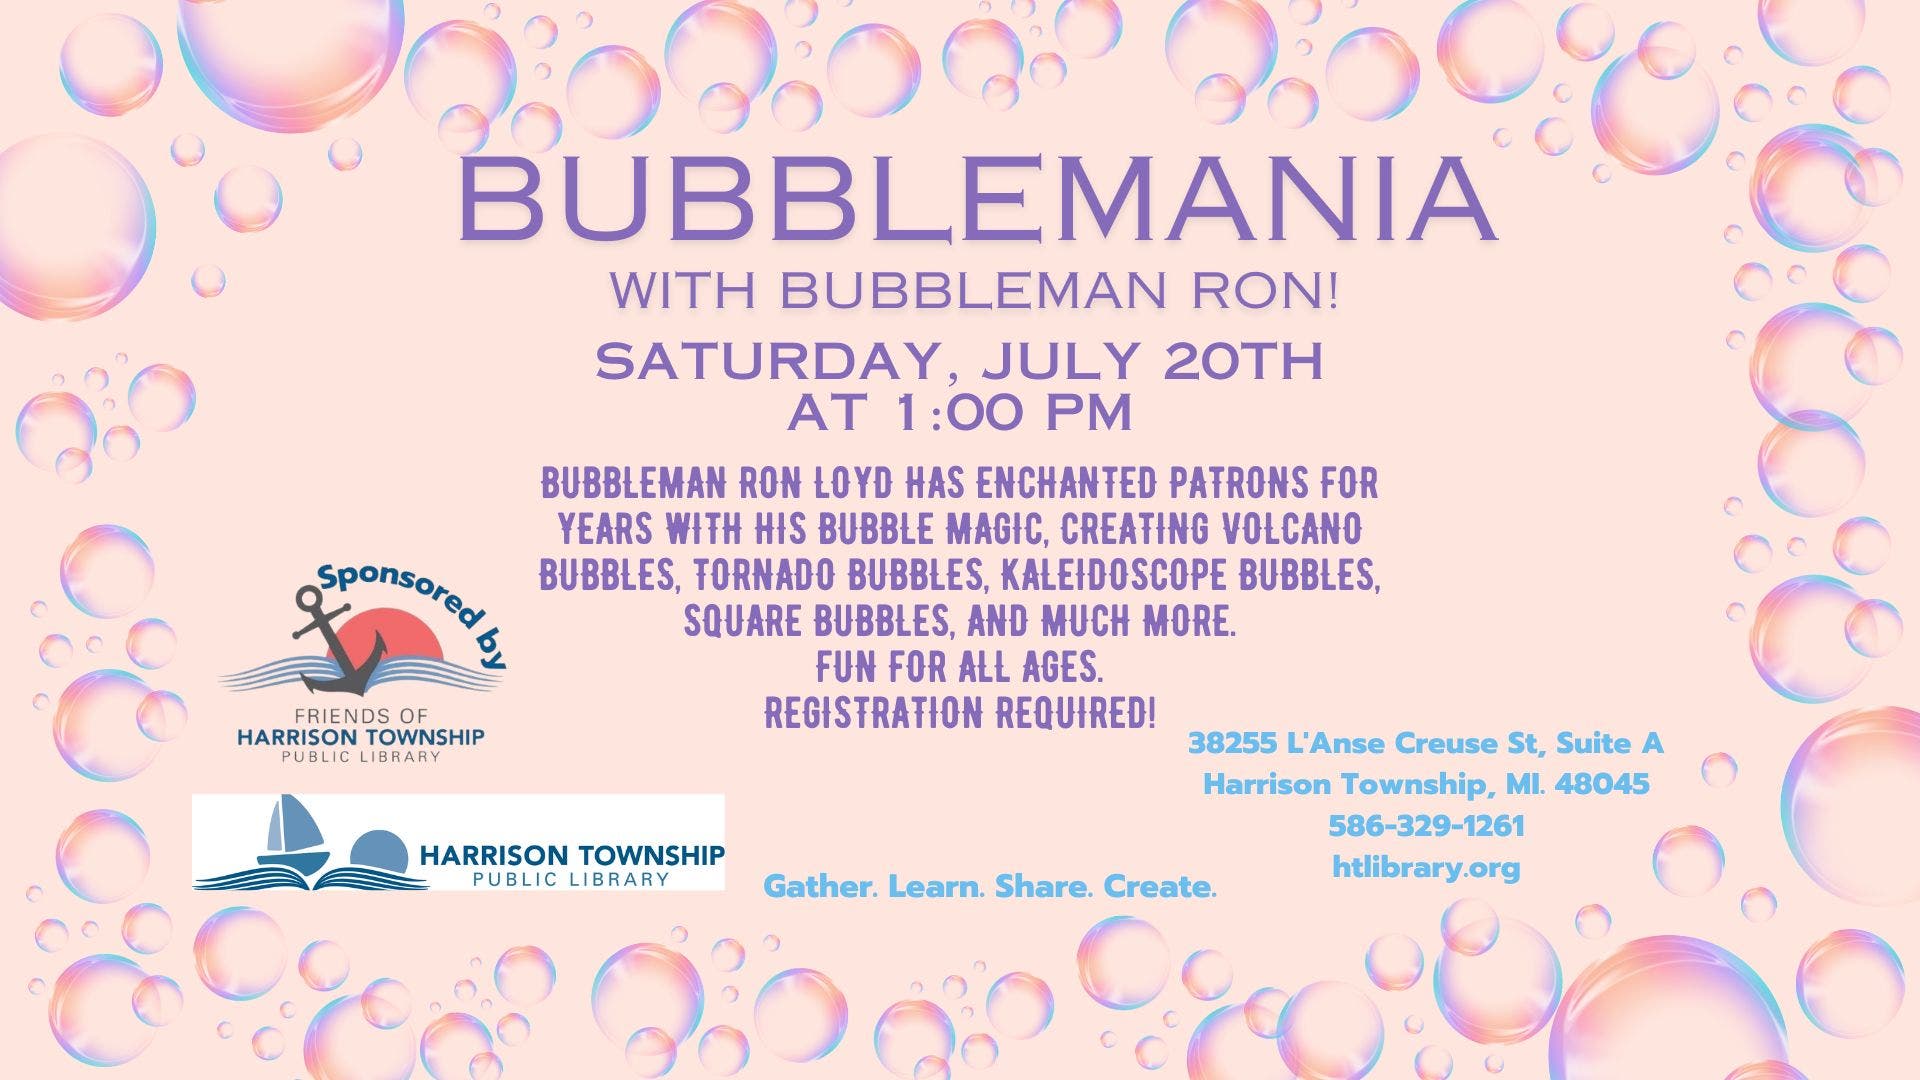 Bubblemania!